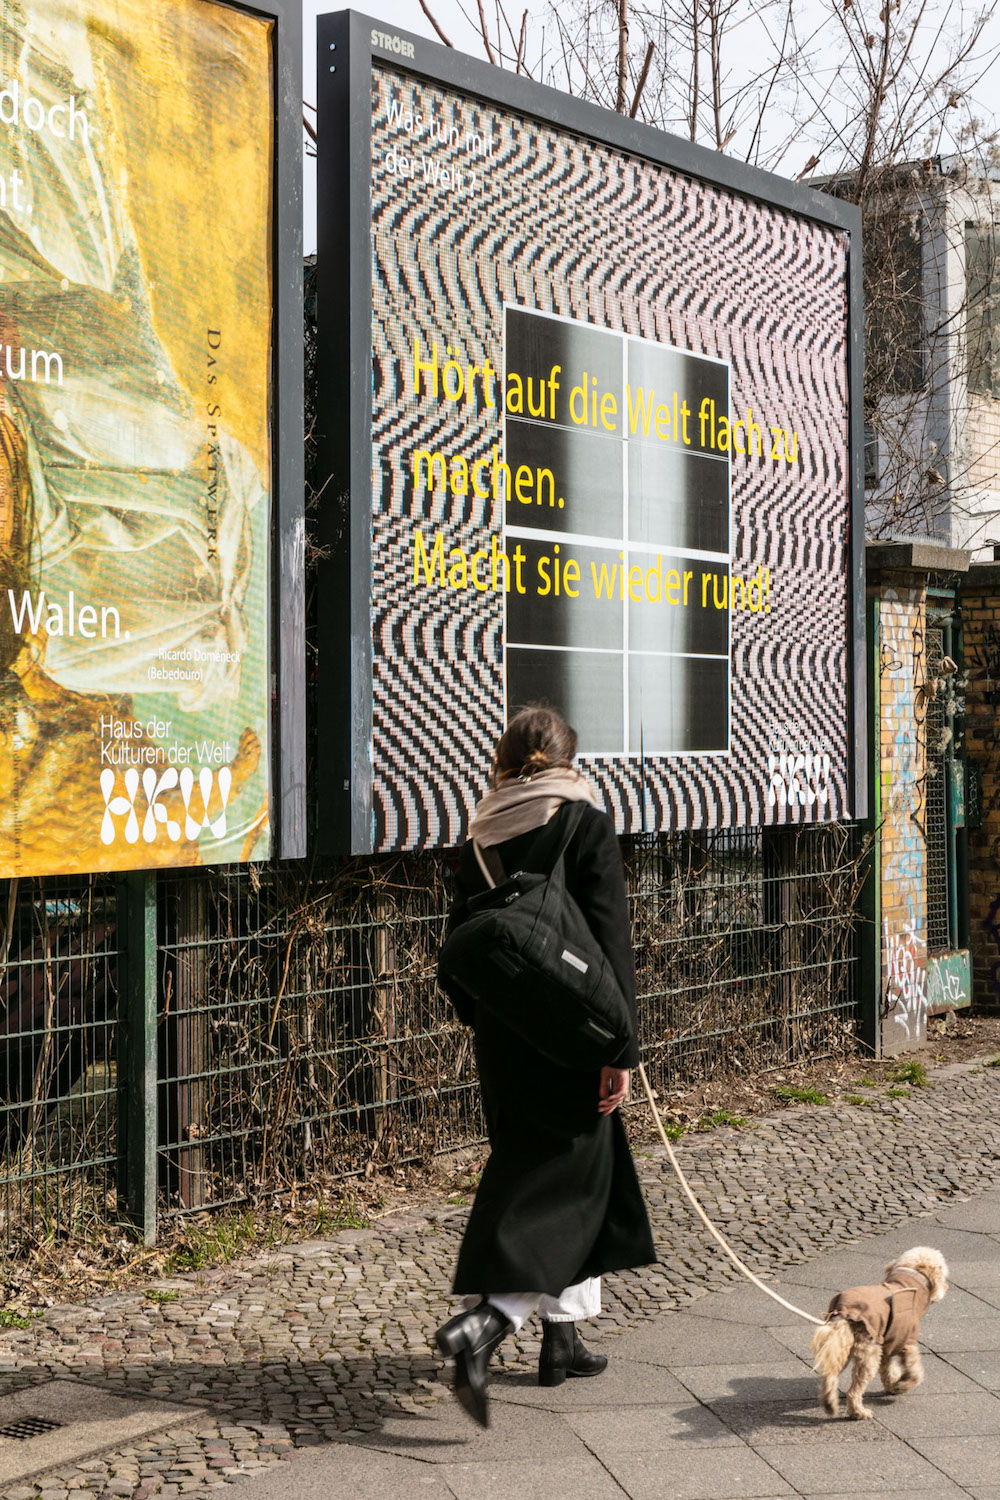 Wolfgang Tillmans »Was tun mit der Welt?«: Große Plakate in der Stadt. Das eine Plakat basiert auf einem Zitat von Marysé Condé